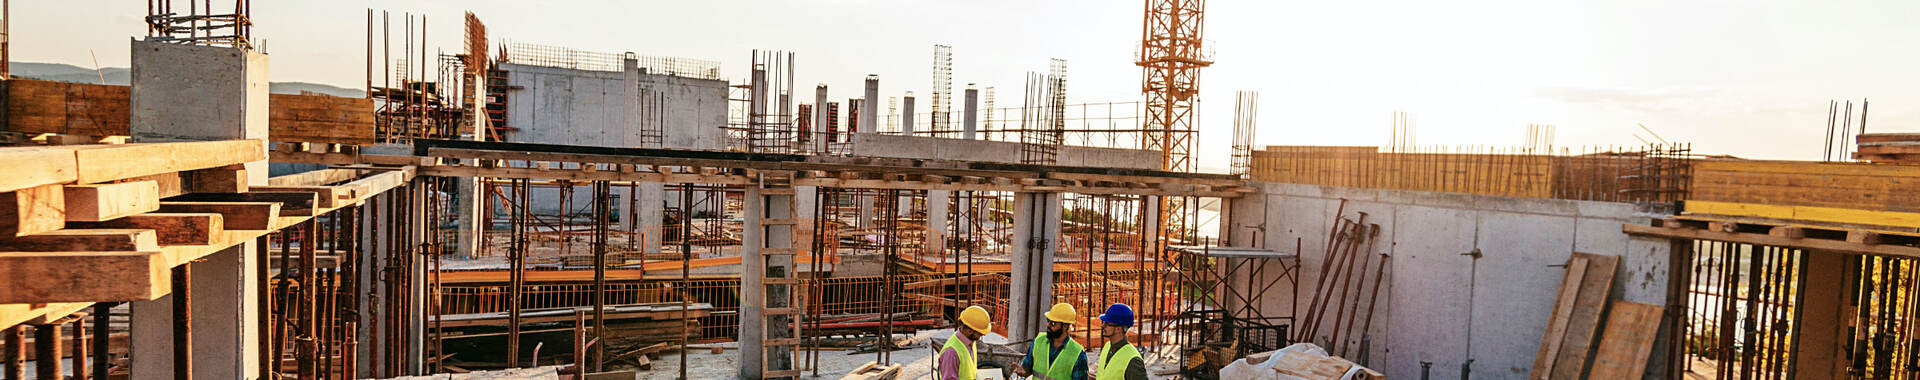 Construction crane on a building site